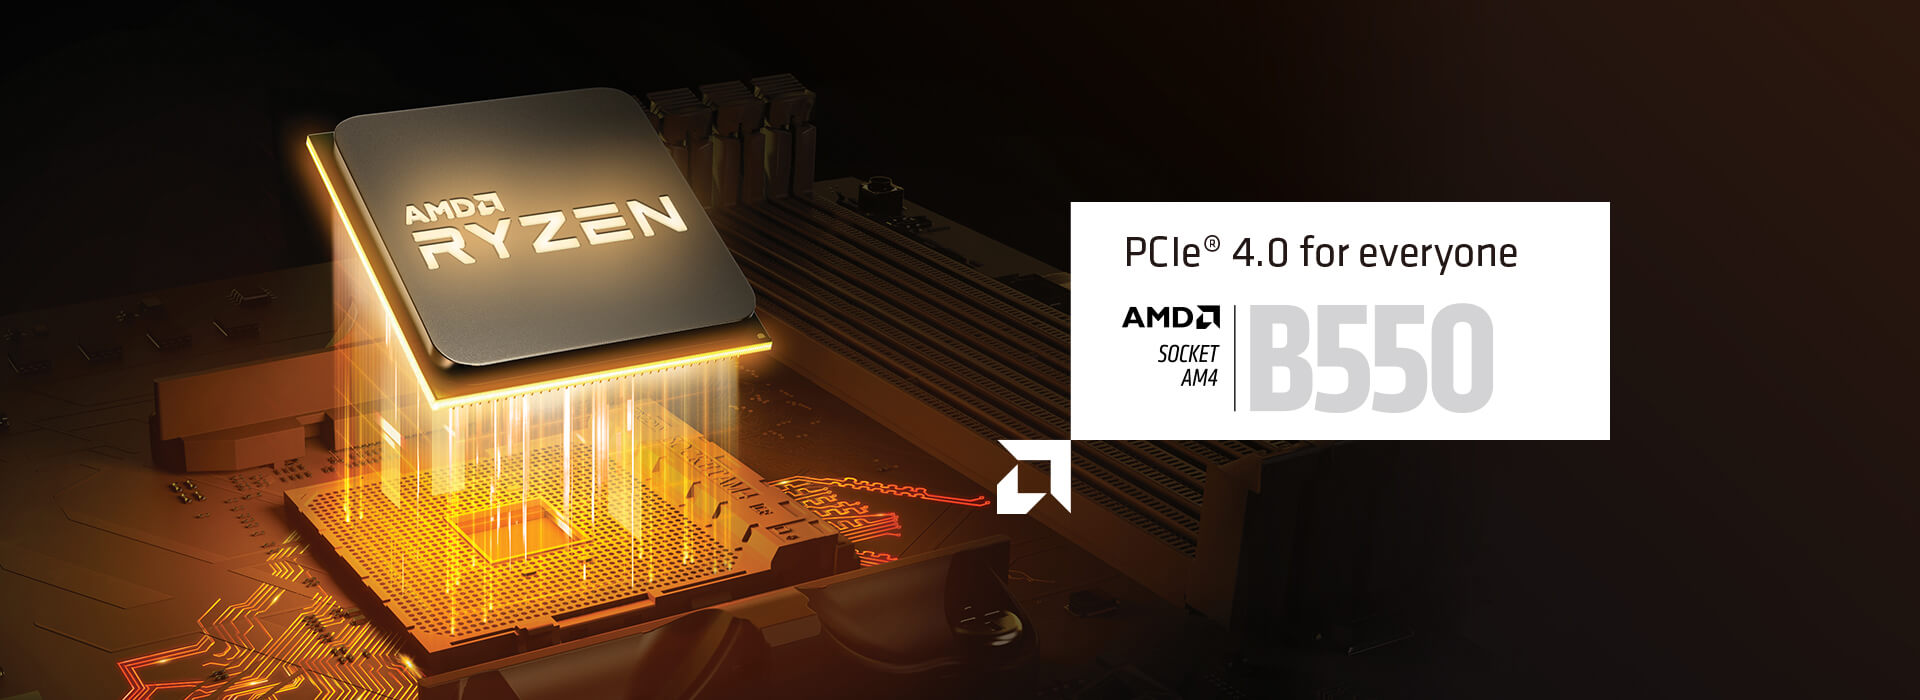 PCIe 4.0 for everyone. AMD SOCKET AM4 B550. 3rd GEN AMD RYZEN DESKTOP READY. Not Compatible with AMD Ryzen 5 3400G & AMD Ryzen 3 3200G.